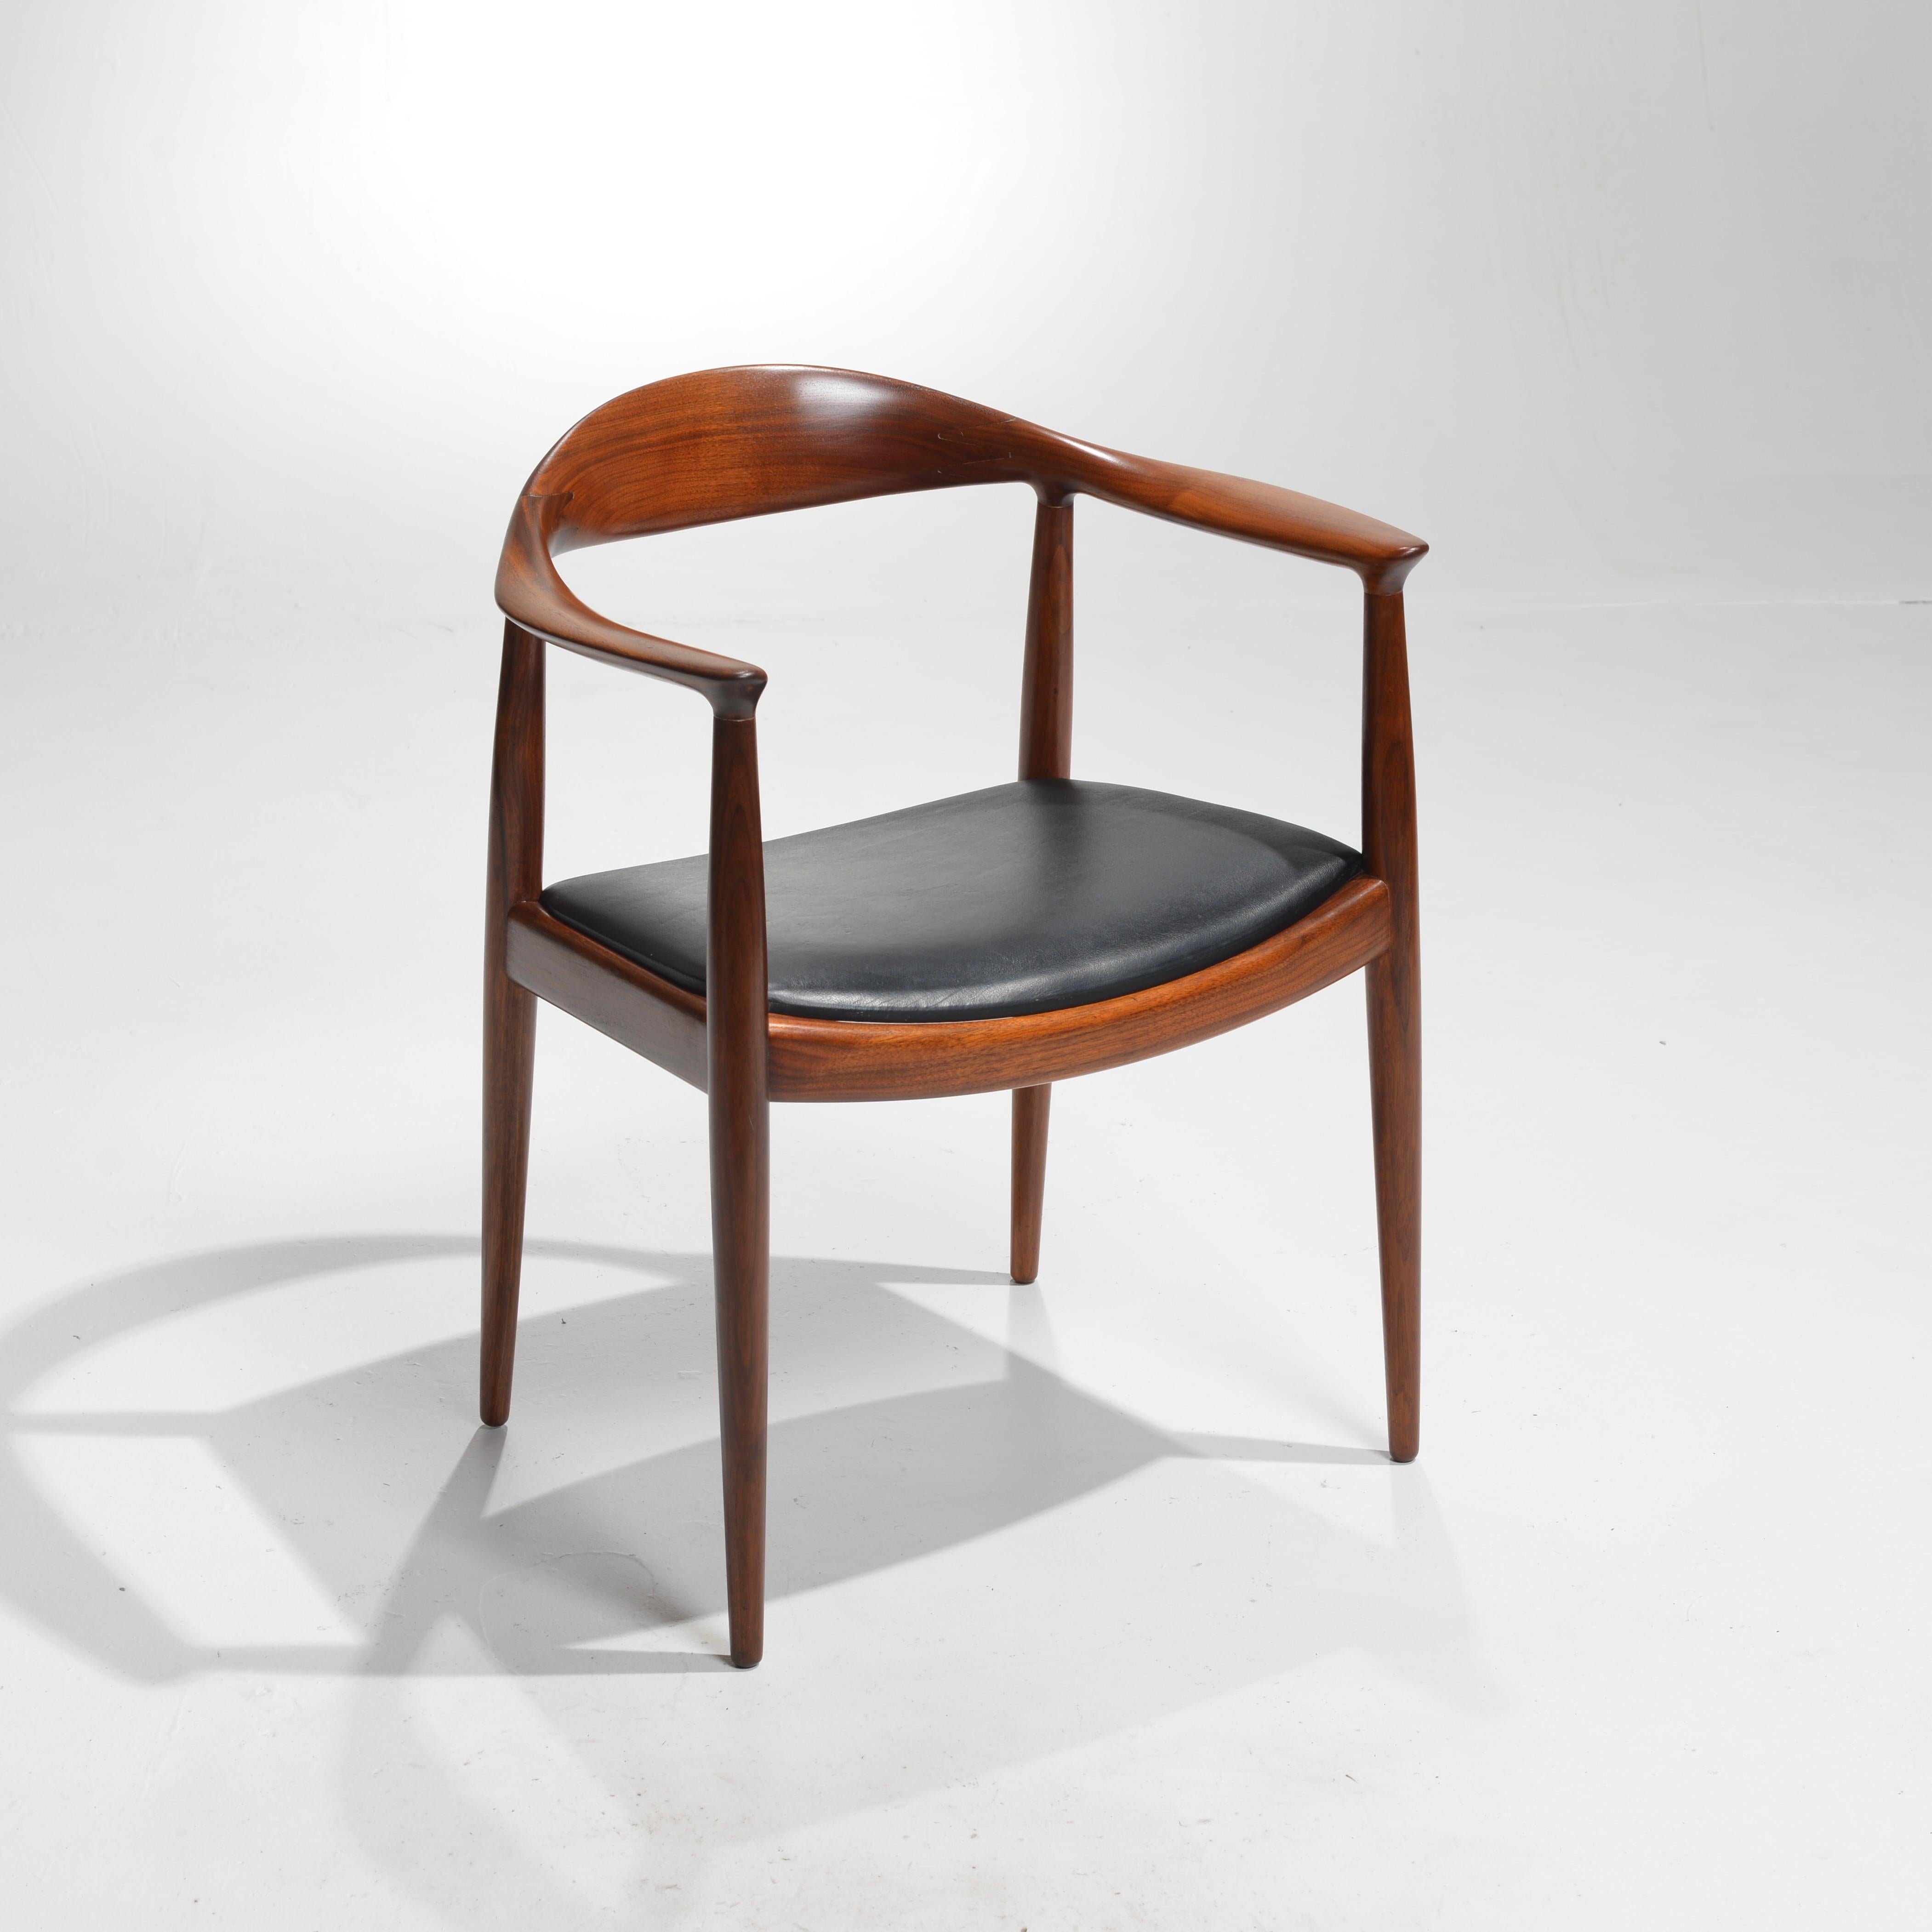 Wir freuen uns, 8 frühe Hans Wegner JH-503 Stühle anbieten zu können, die 1949 entworfen und von Johannes Hansen produziert wurden. Vollständig restaurierte massive Walnusskonstruktion. Gestempelt mit der Herstellermarke. Derzeit haben wir 8 in